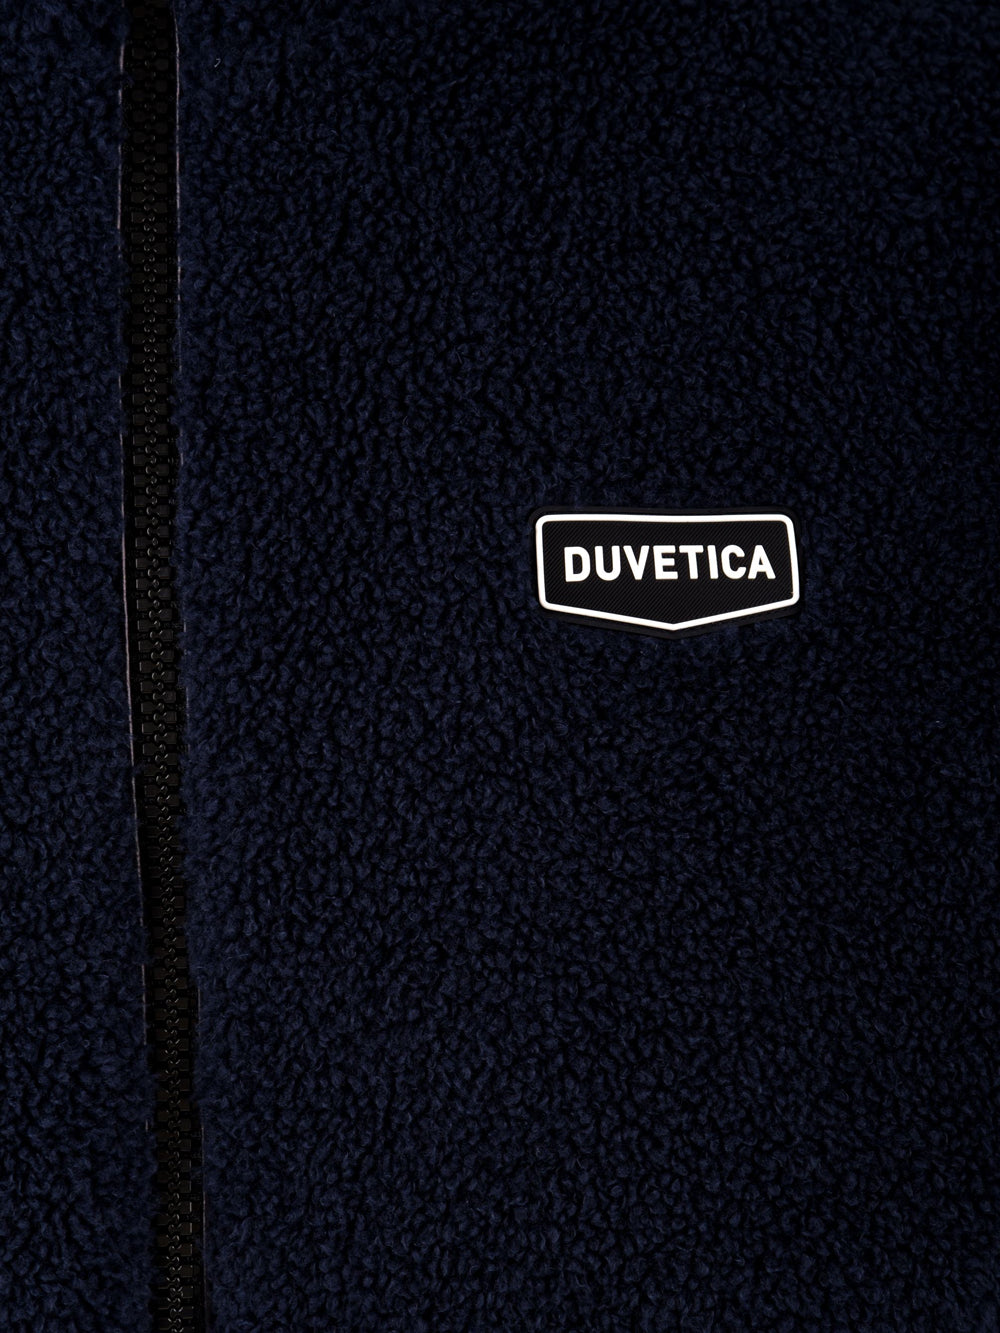 Giubbotto Uomo Double Face Feliciotto, Duvetica, Parte 1, blu, logo